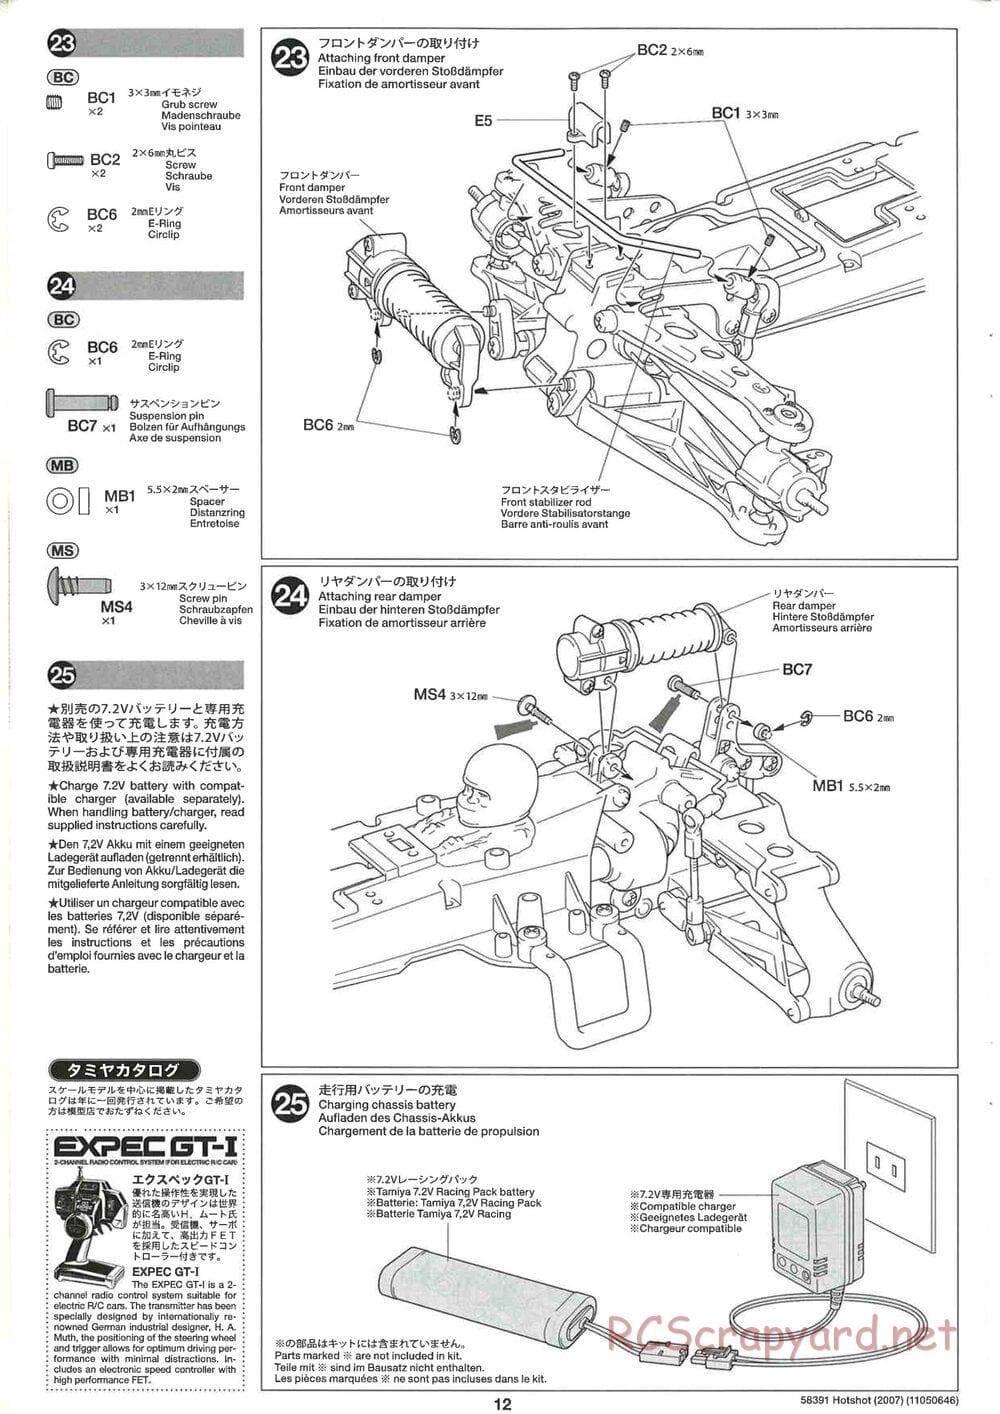 Tamiya - Hotshot - 2007 - HS Chassis - Manual - Page 12